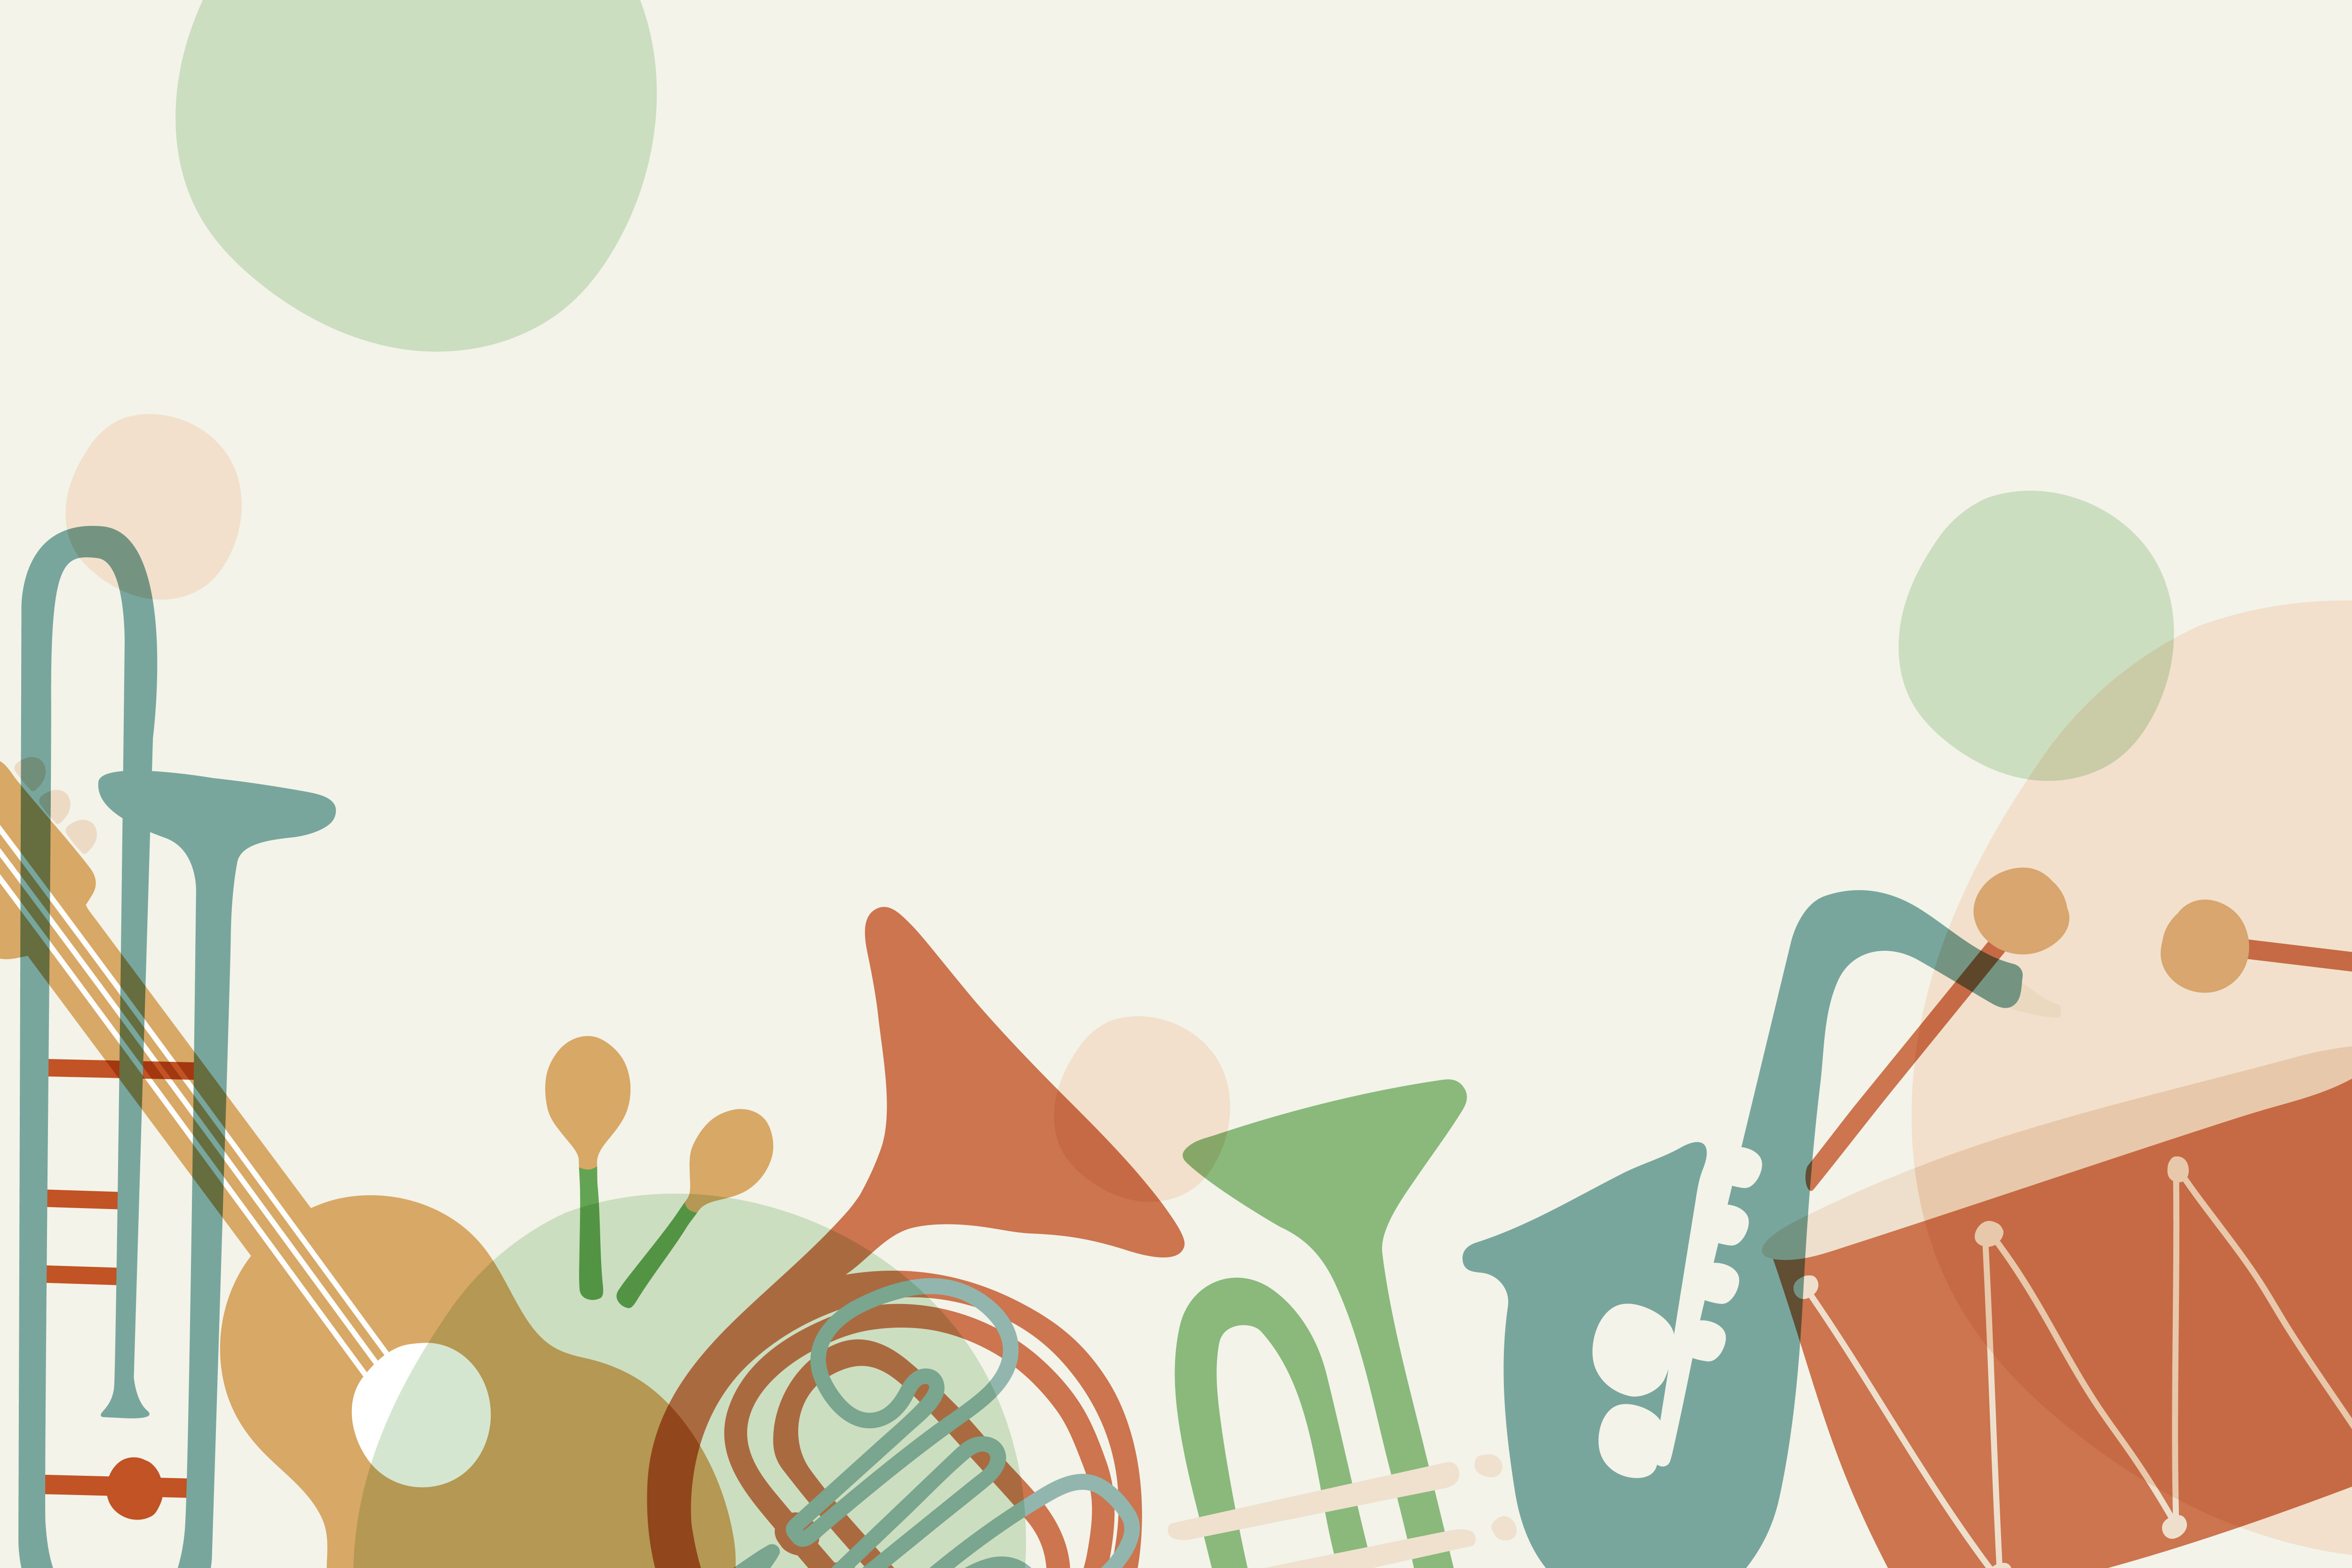 digital illustrasjon med mange musikkinstrumenter: trommer, saksofon, trompet, gitar, trombone med mer.